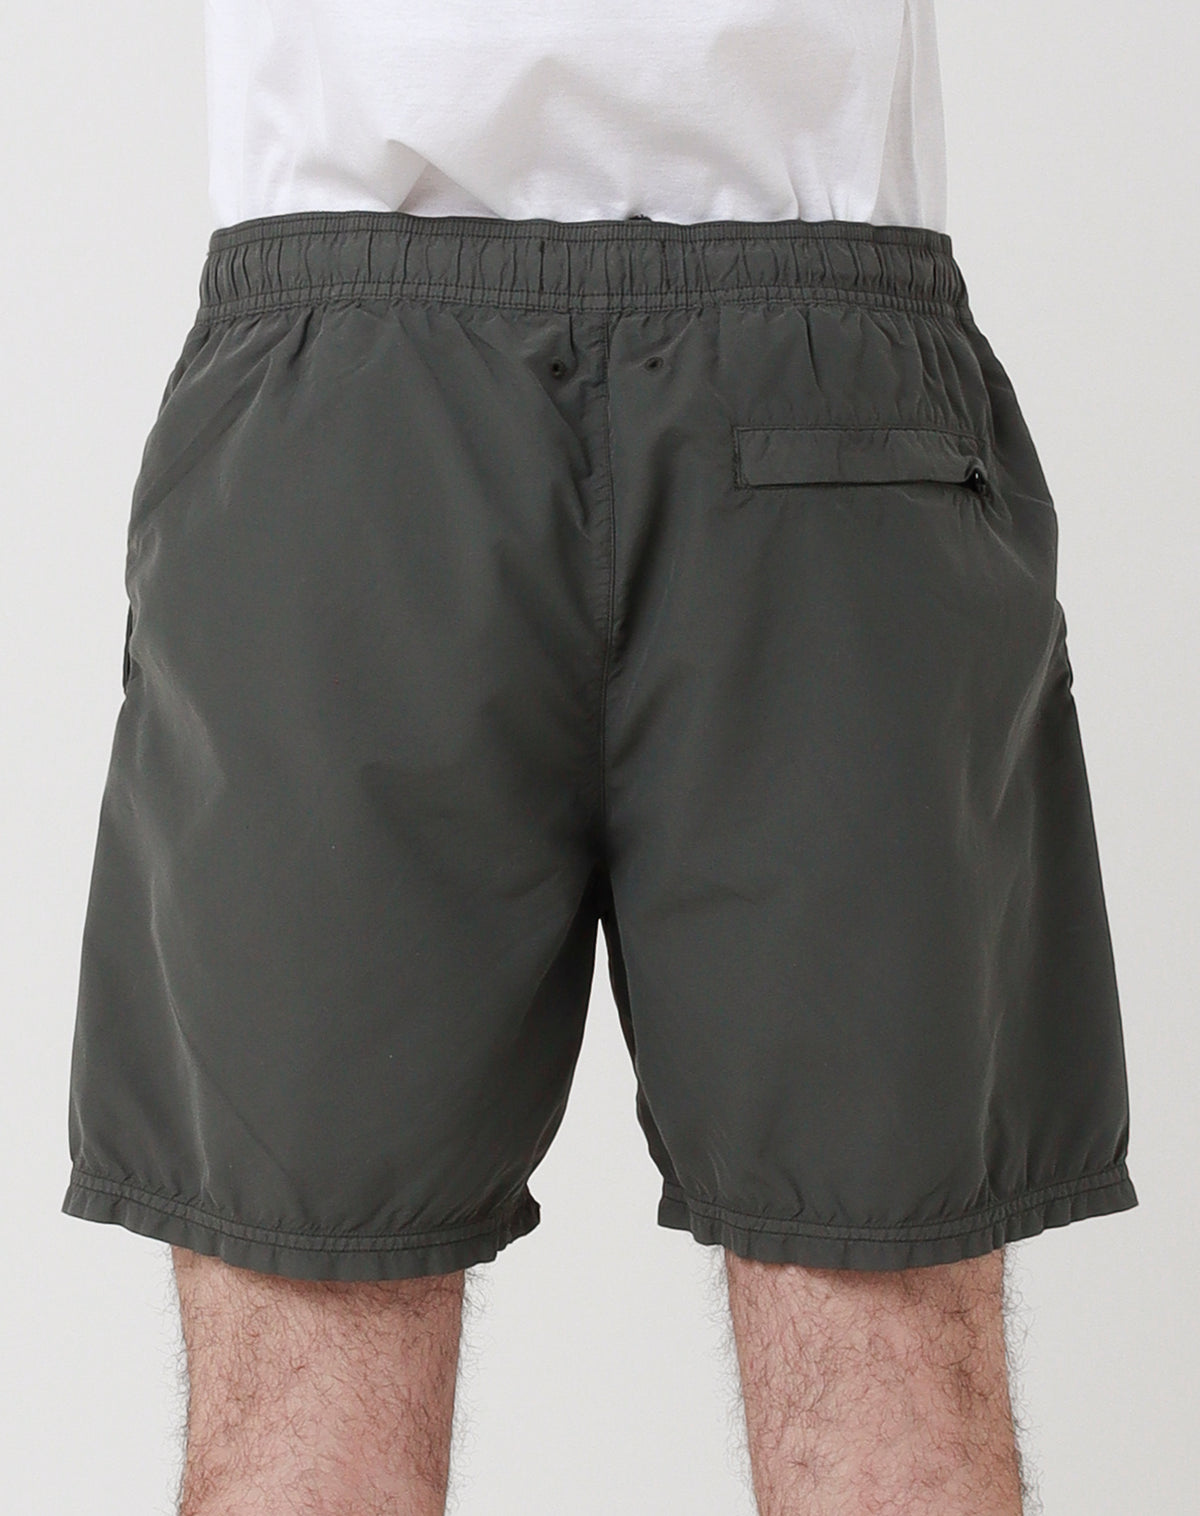 STONE ISLAND Shorts